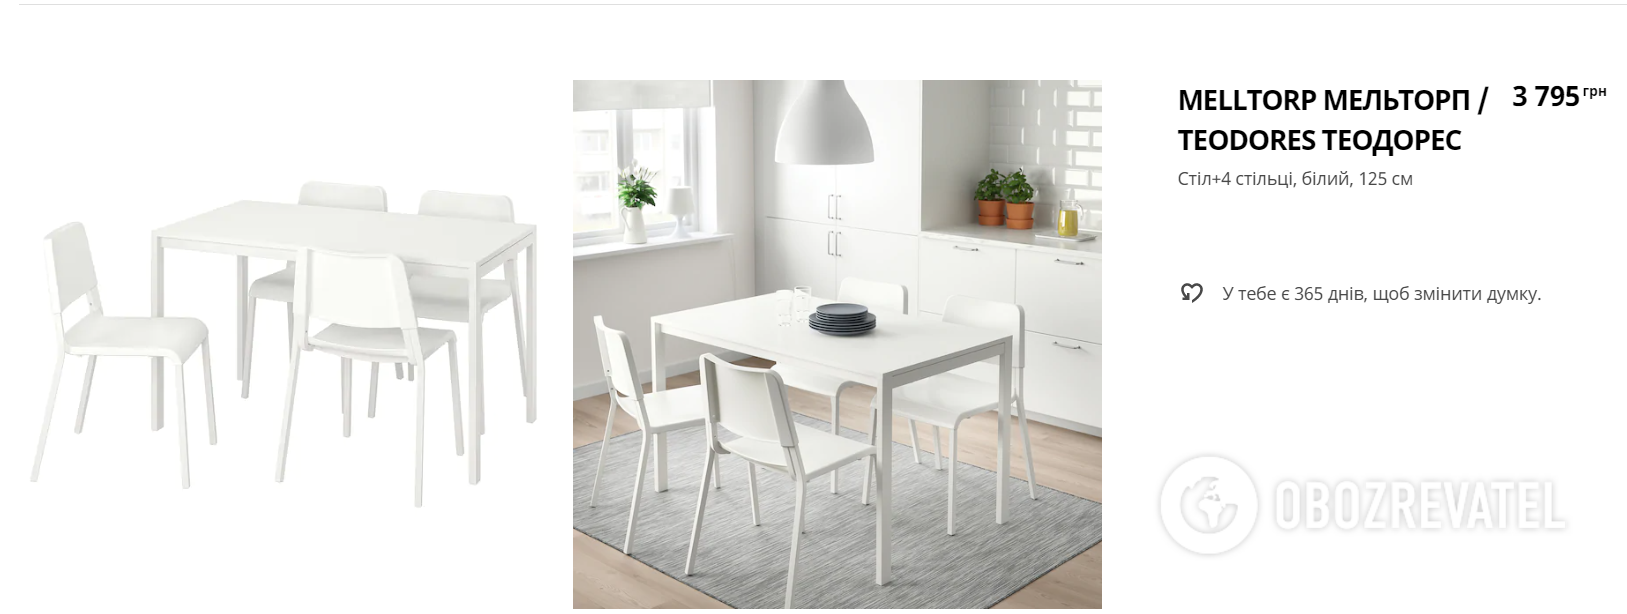 Вартість товару на офіційному сайті IKEA